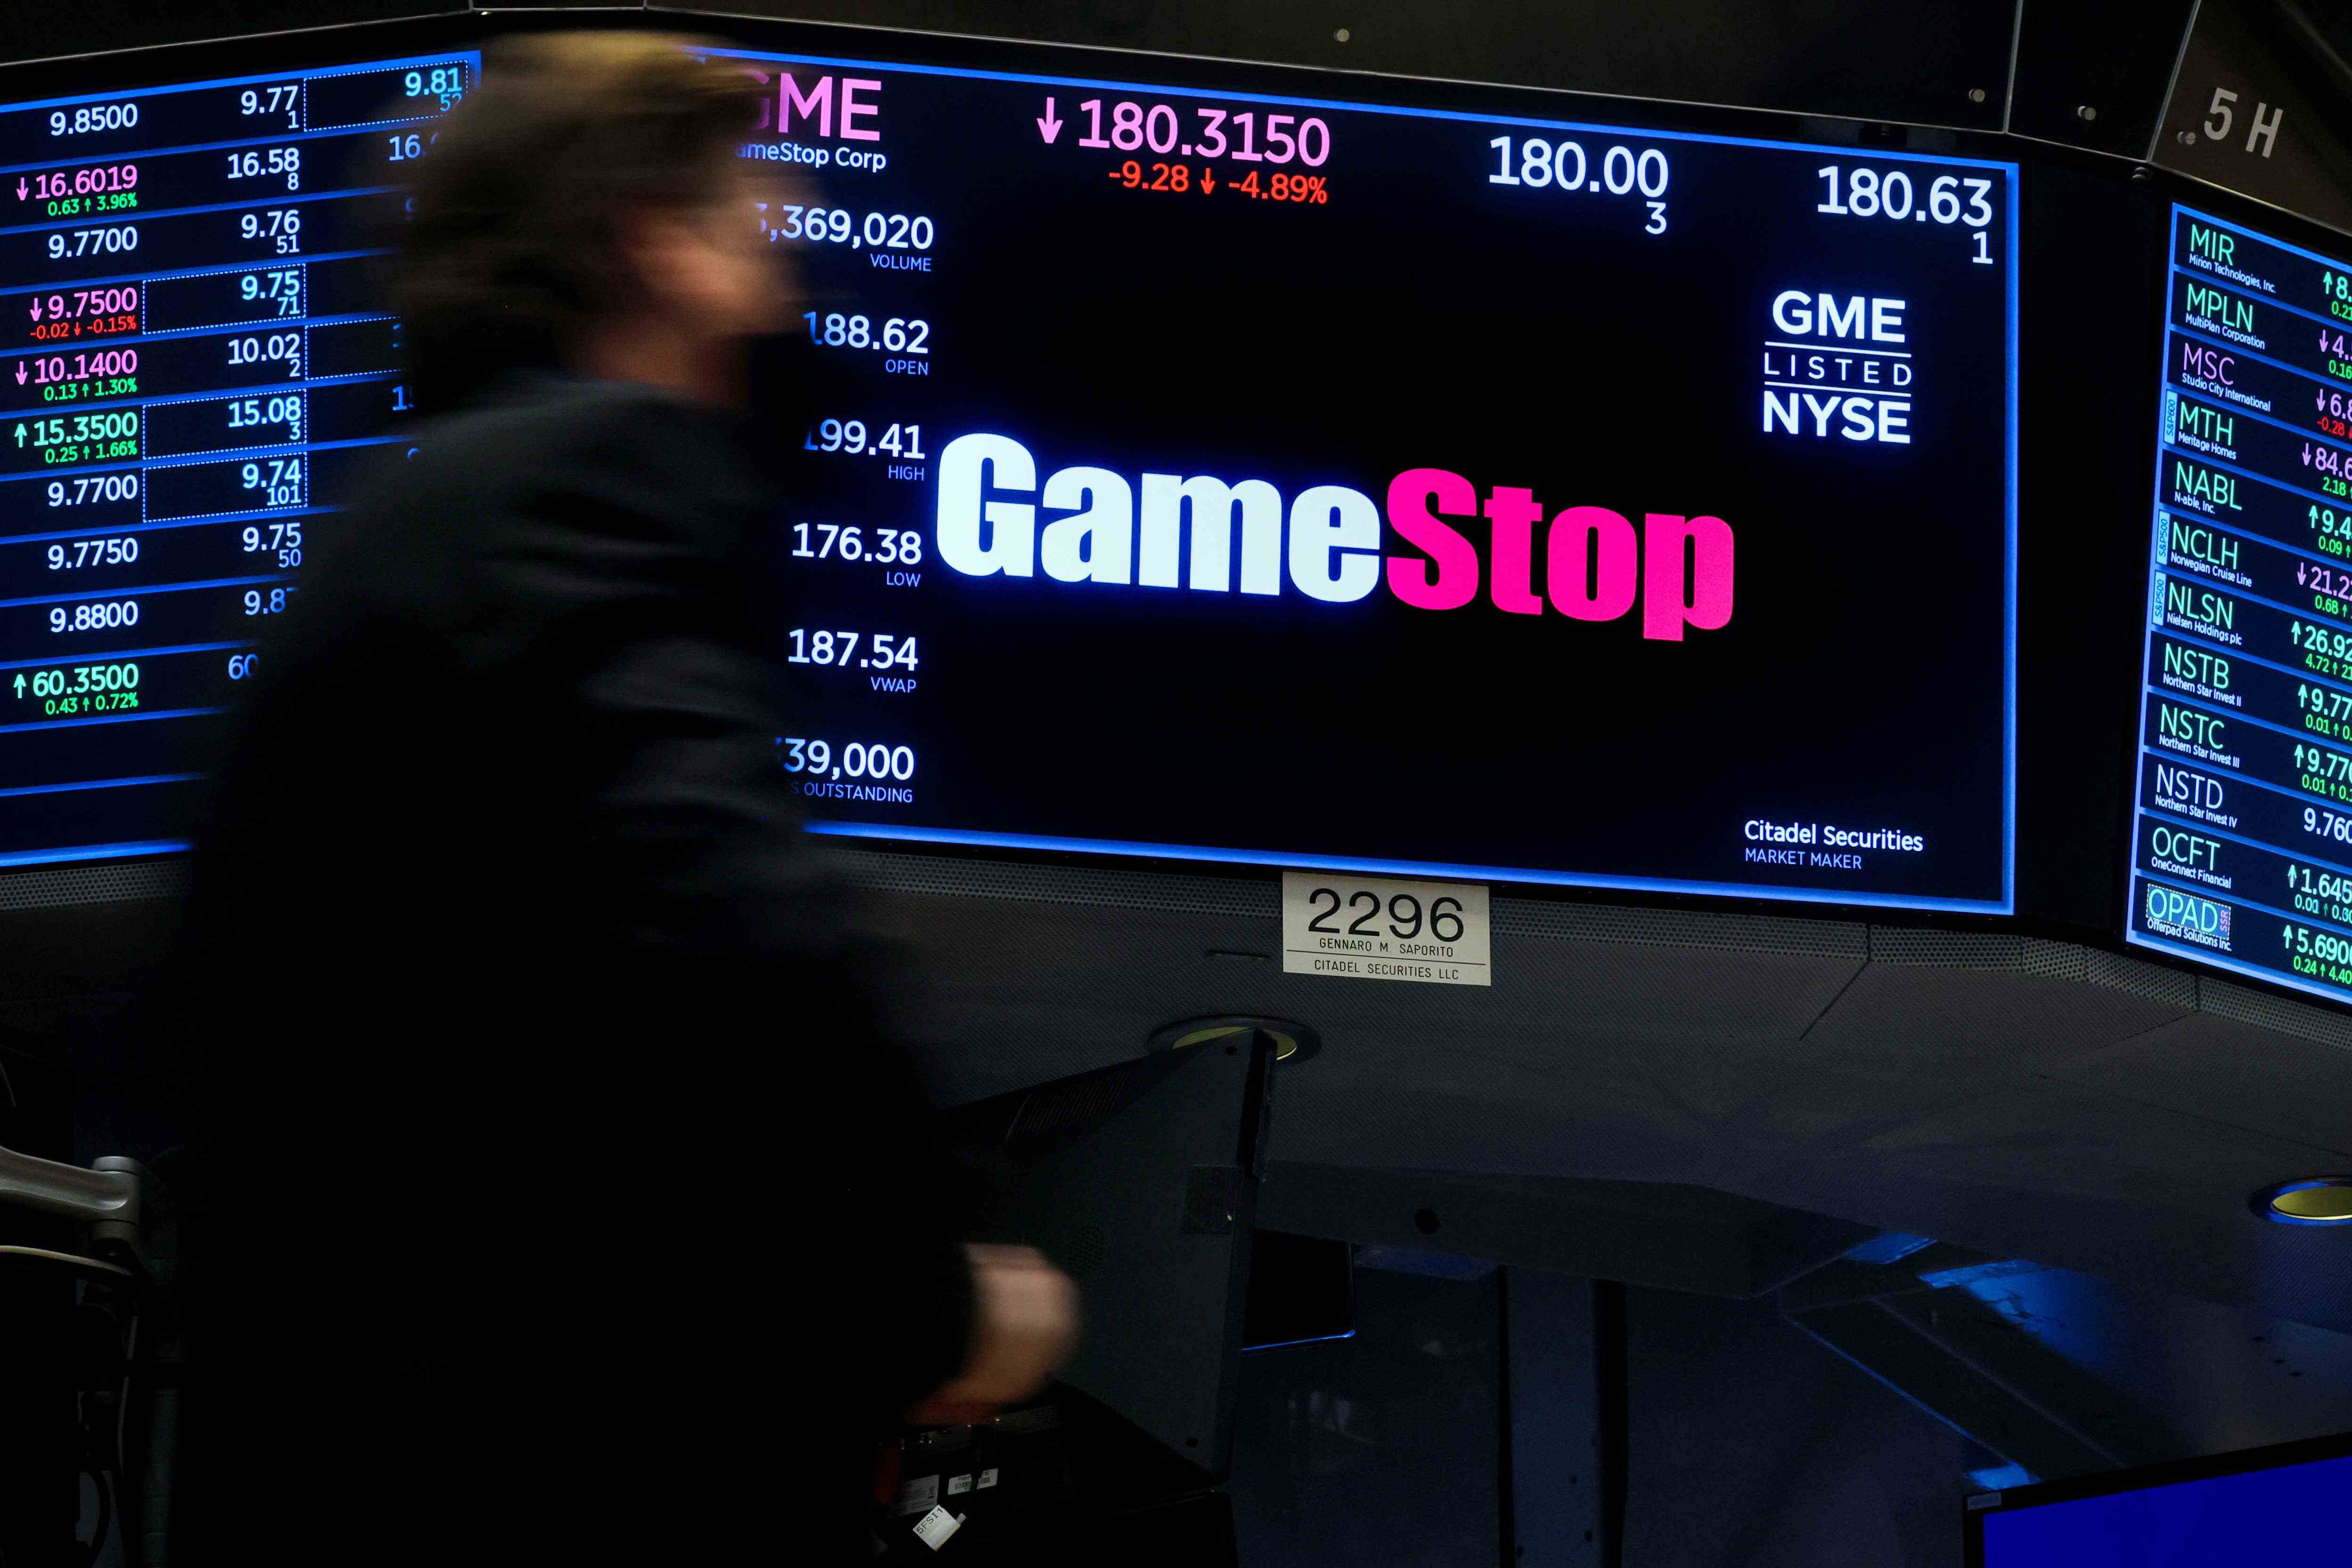 GameStop Açığa Satış Yapanlar Meme Hisse Senedi Rallisinde 2 Milyar Dolar Kaybetti başlıklı makale için resim